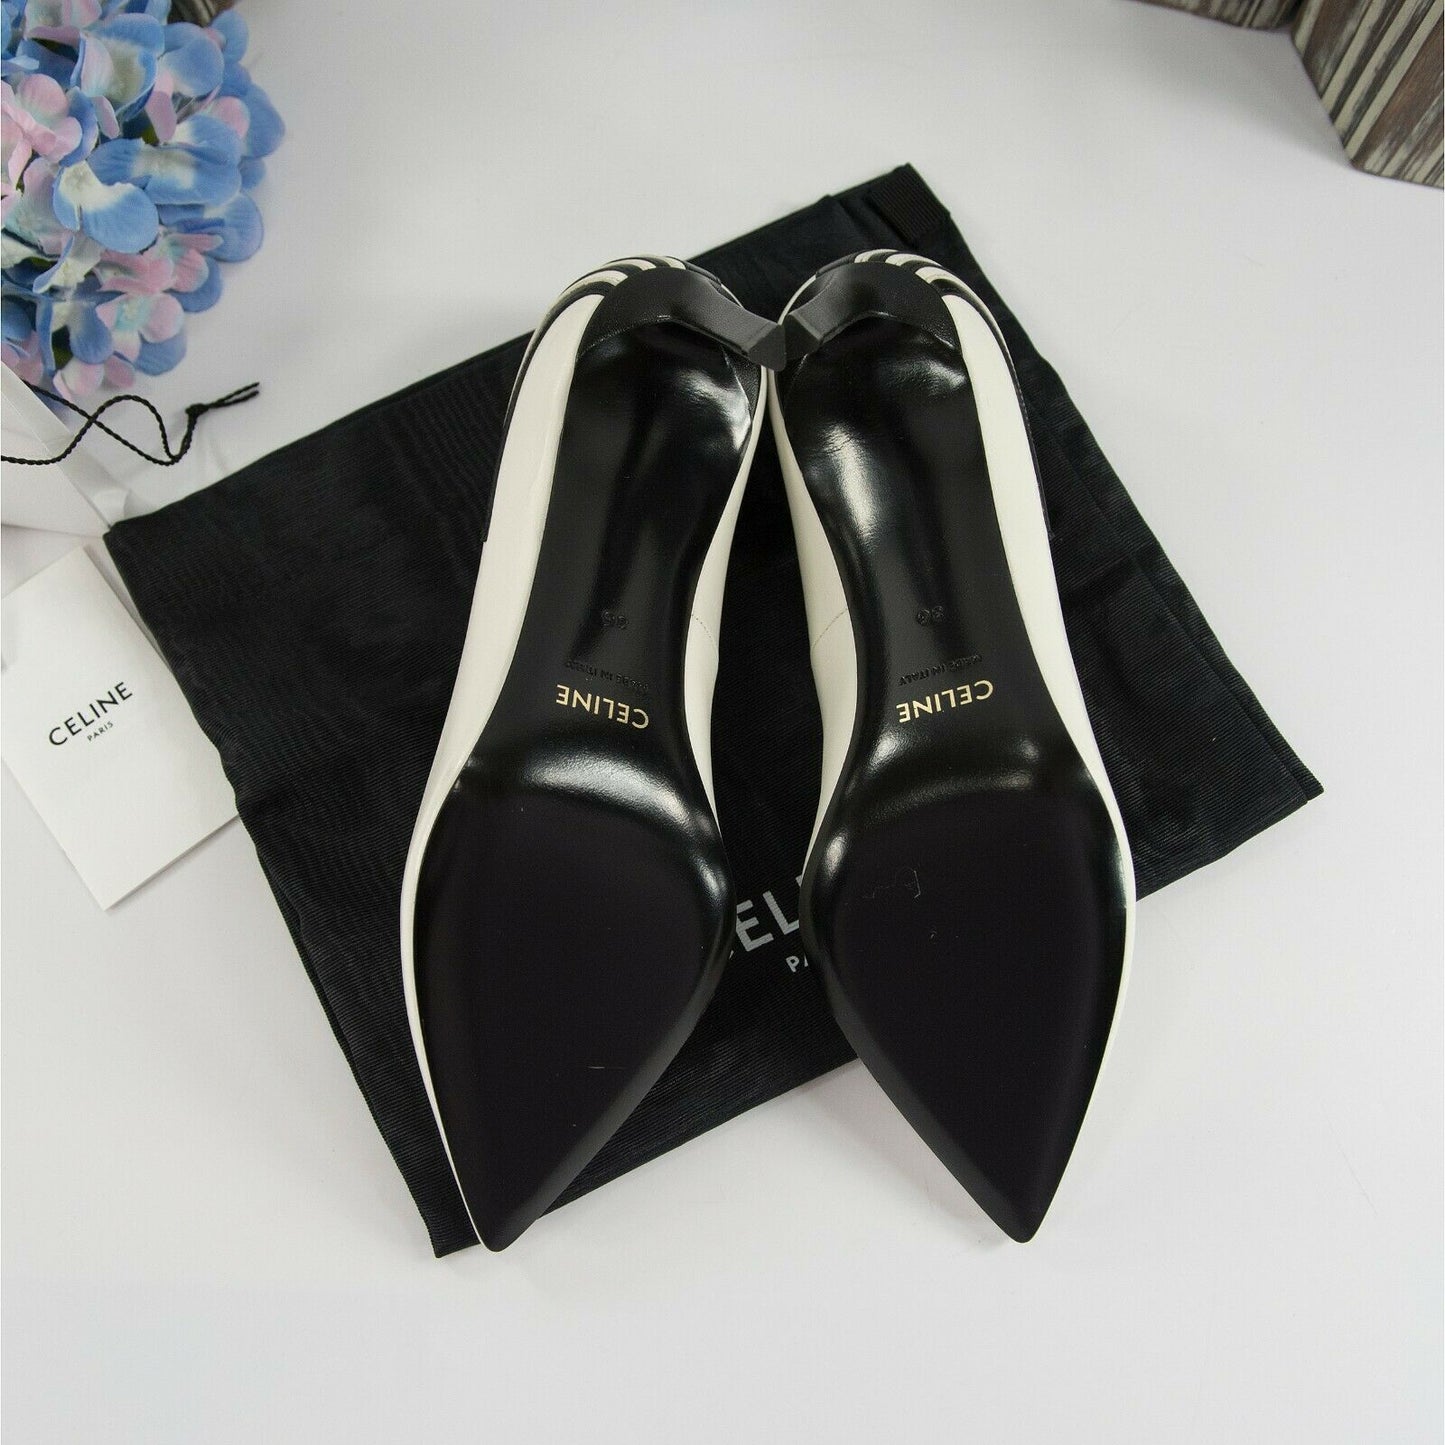 Celine Black White Leather Fan Applique Triangle Heels Size 37 7 NIB